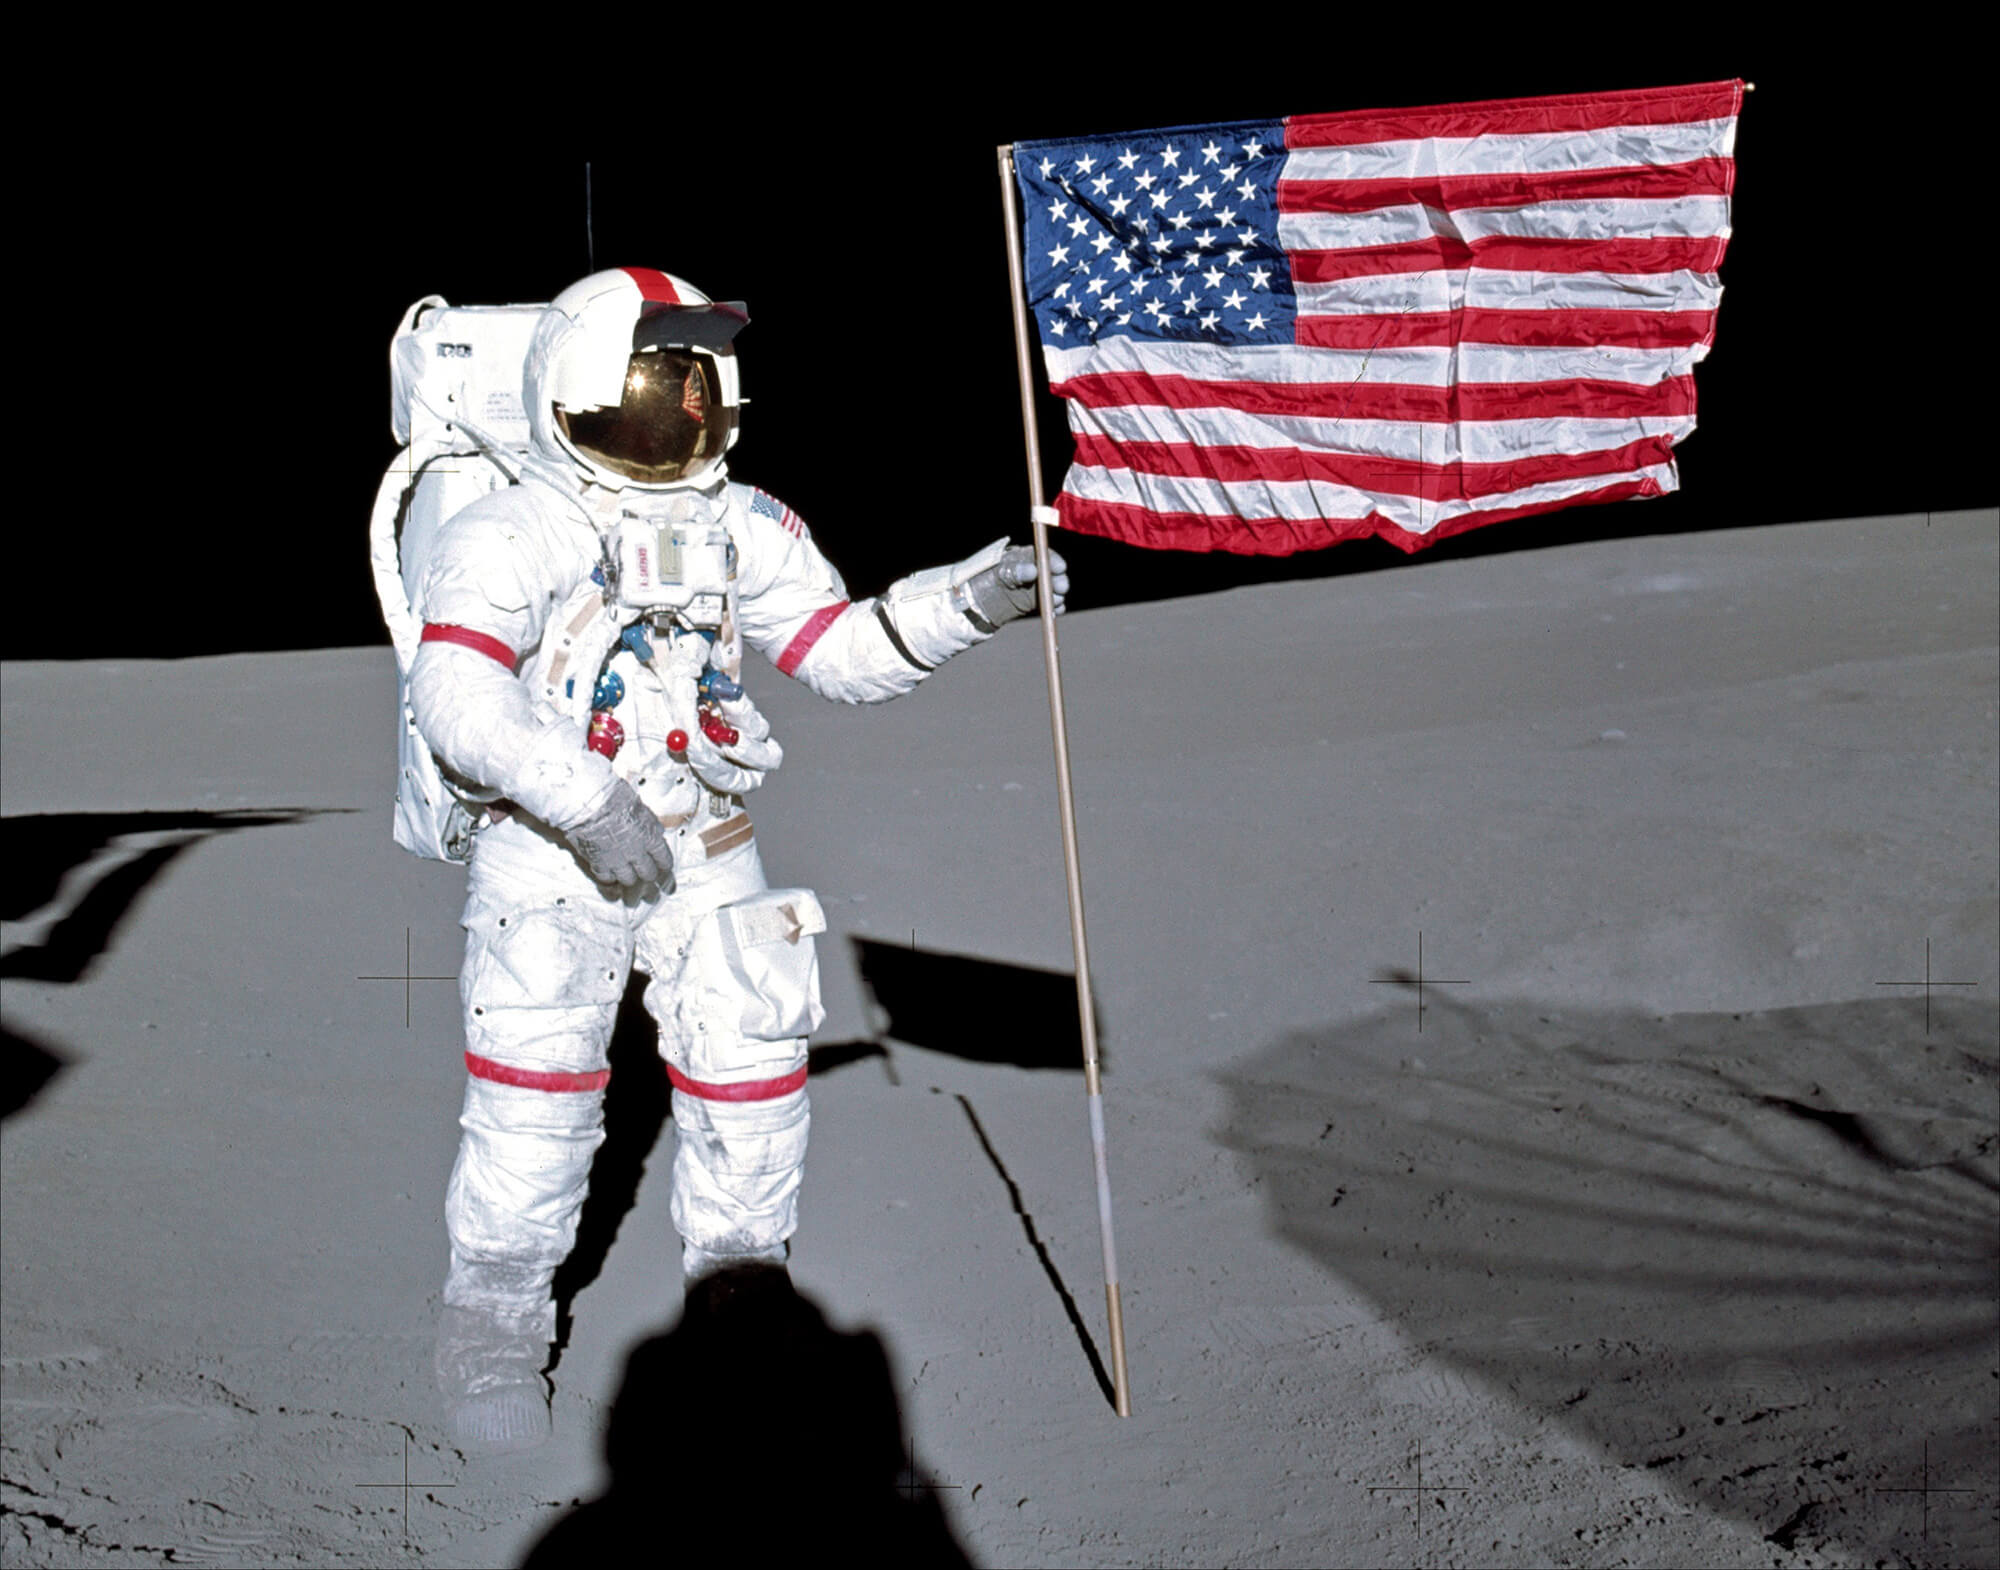 Были ли американцы на Луне? Астронавт Астронавт Алан Шепард устанавливает флаг США на поверхность Луны. Флаг пришлось дополнительно закрепить. Фото.